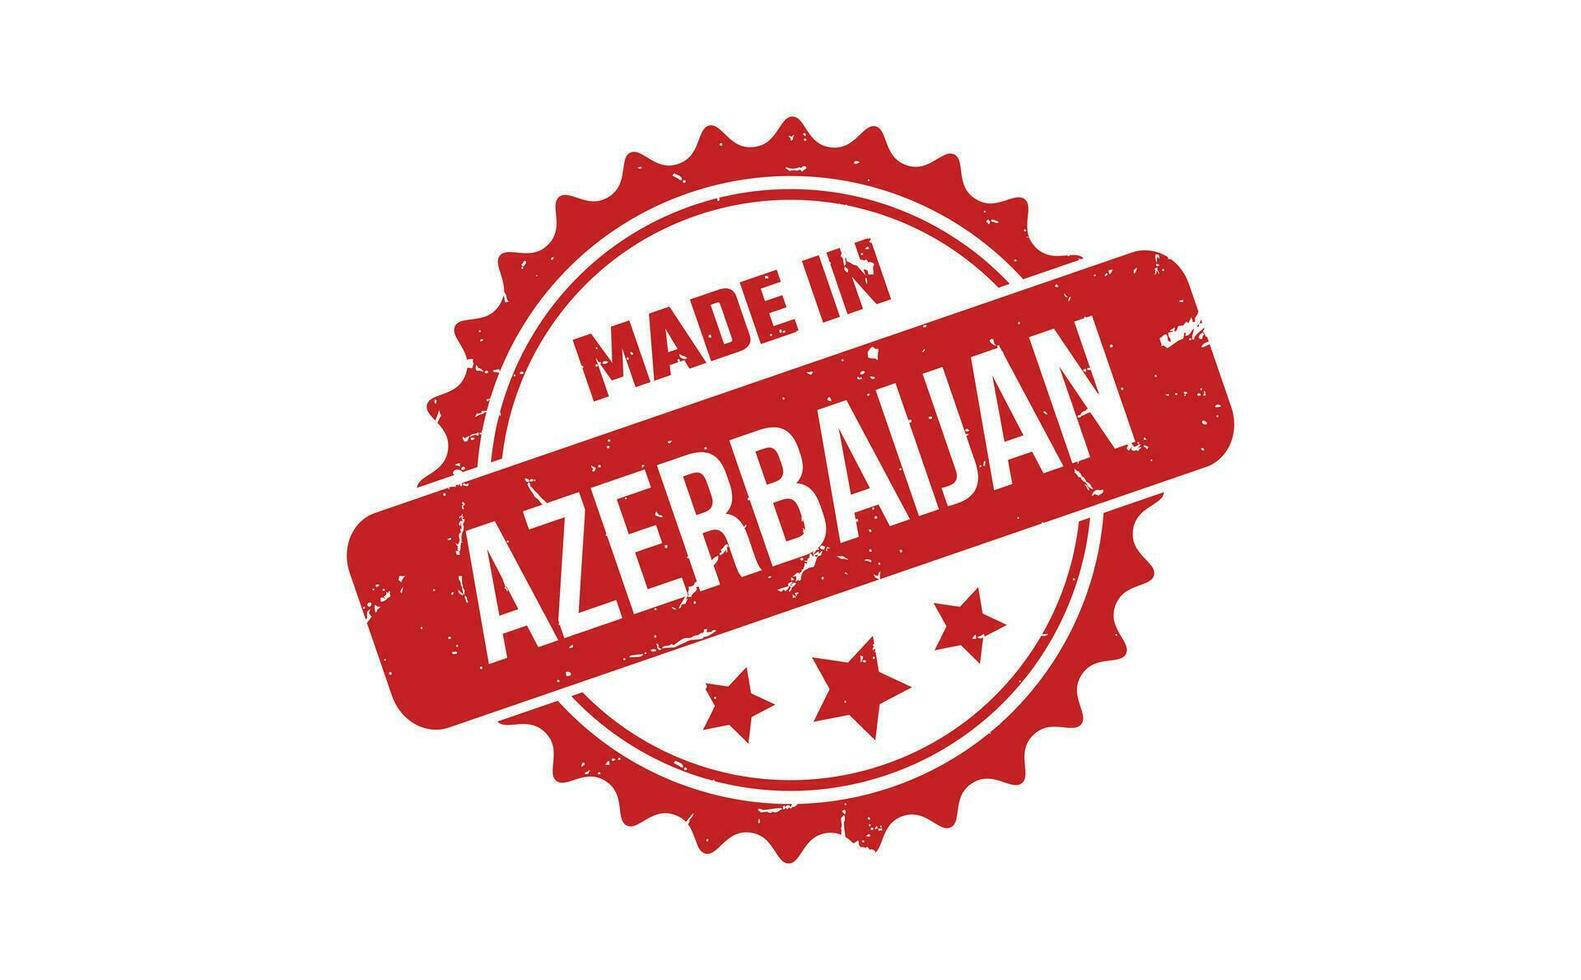 hecho en azerbaiyán caucho sello vector